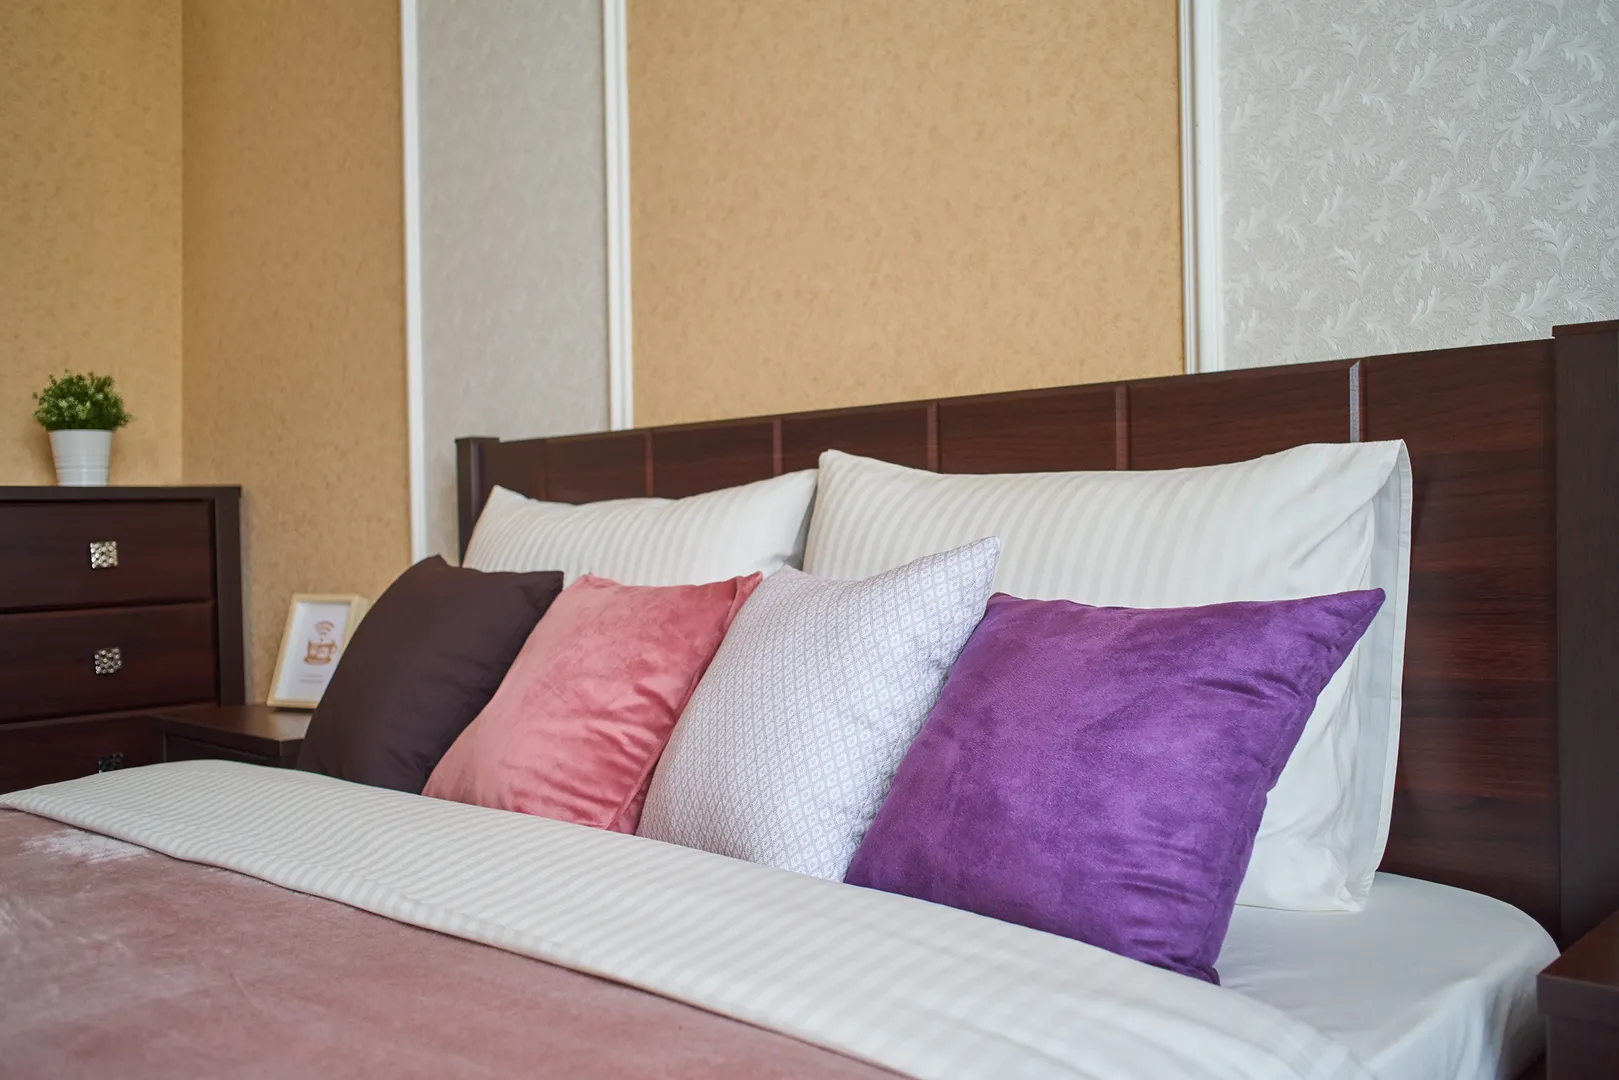 Белоснежное постельное белье и воздушные одеяло и подушки помогут Вам полноценно отдохнуть